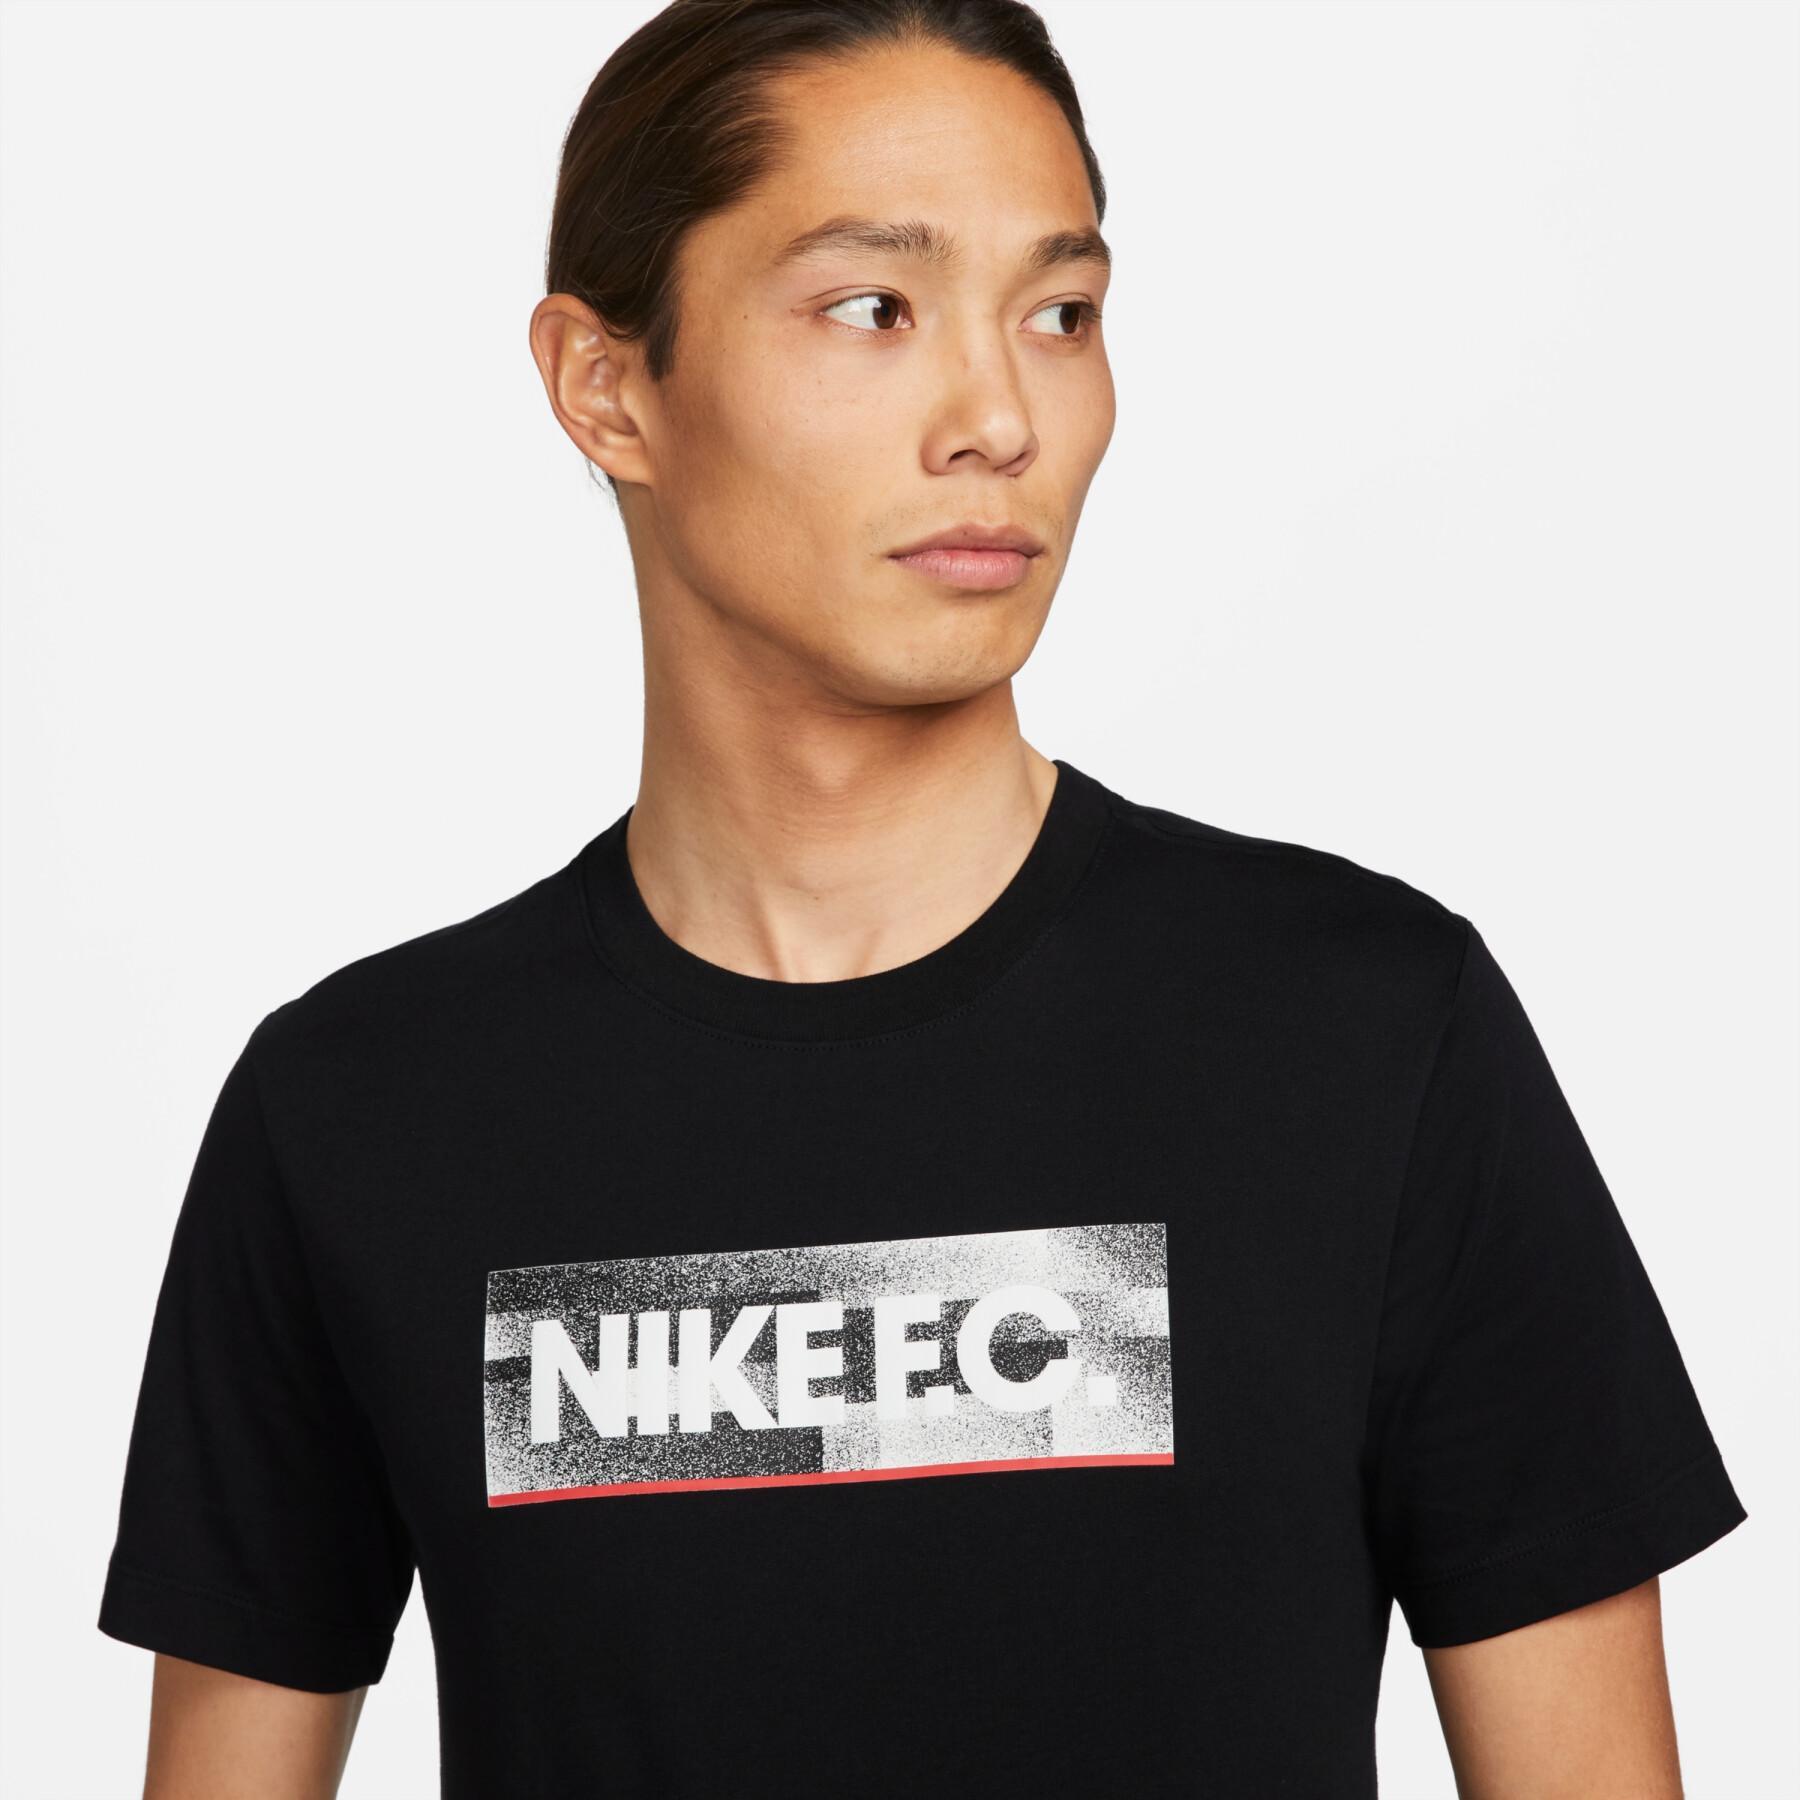 Maglietta Nike F.C.